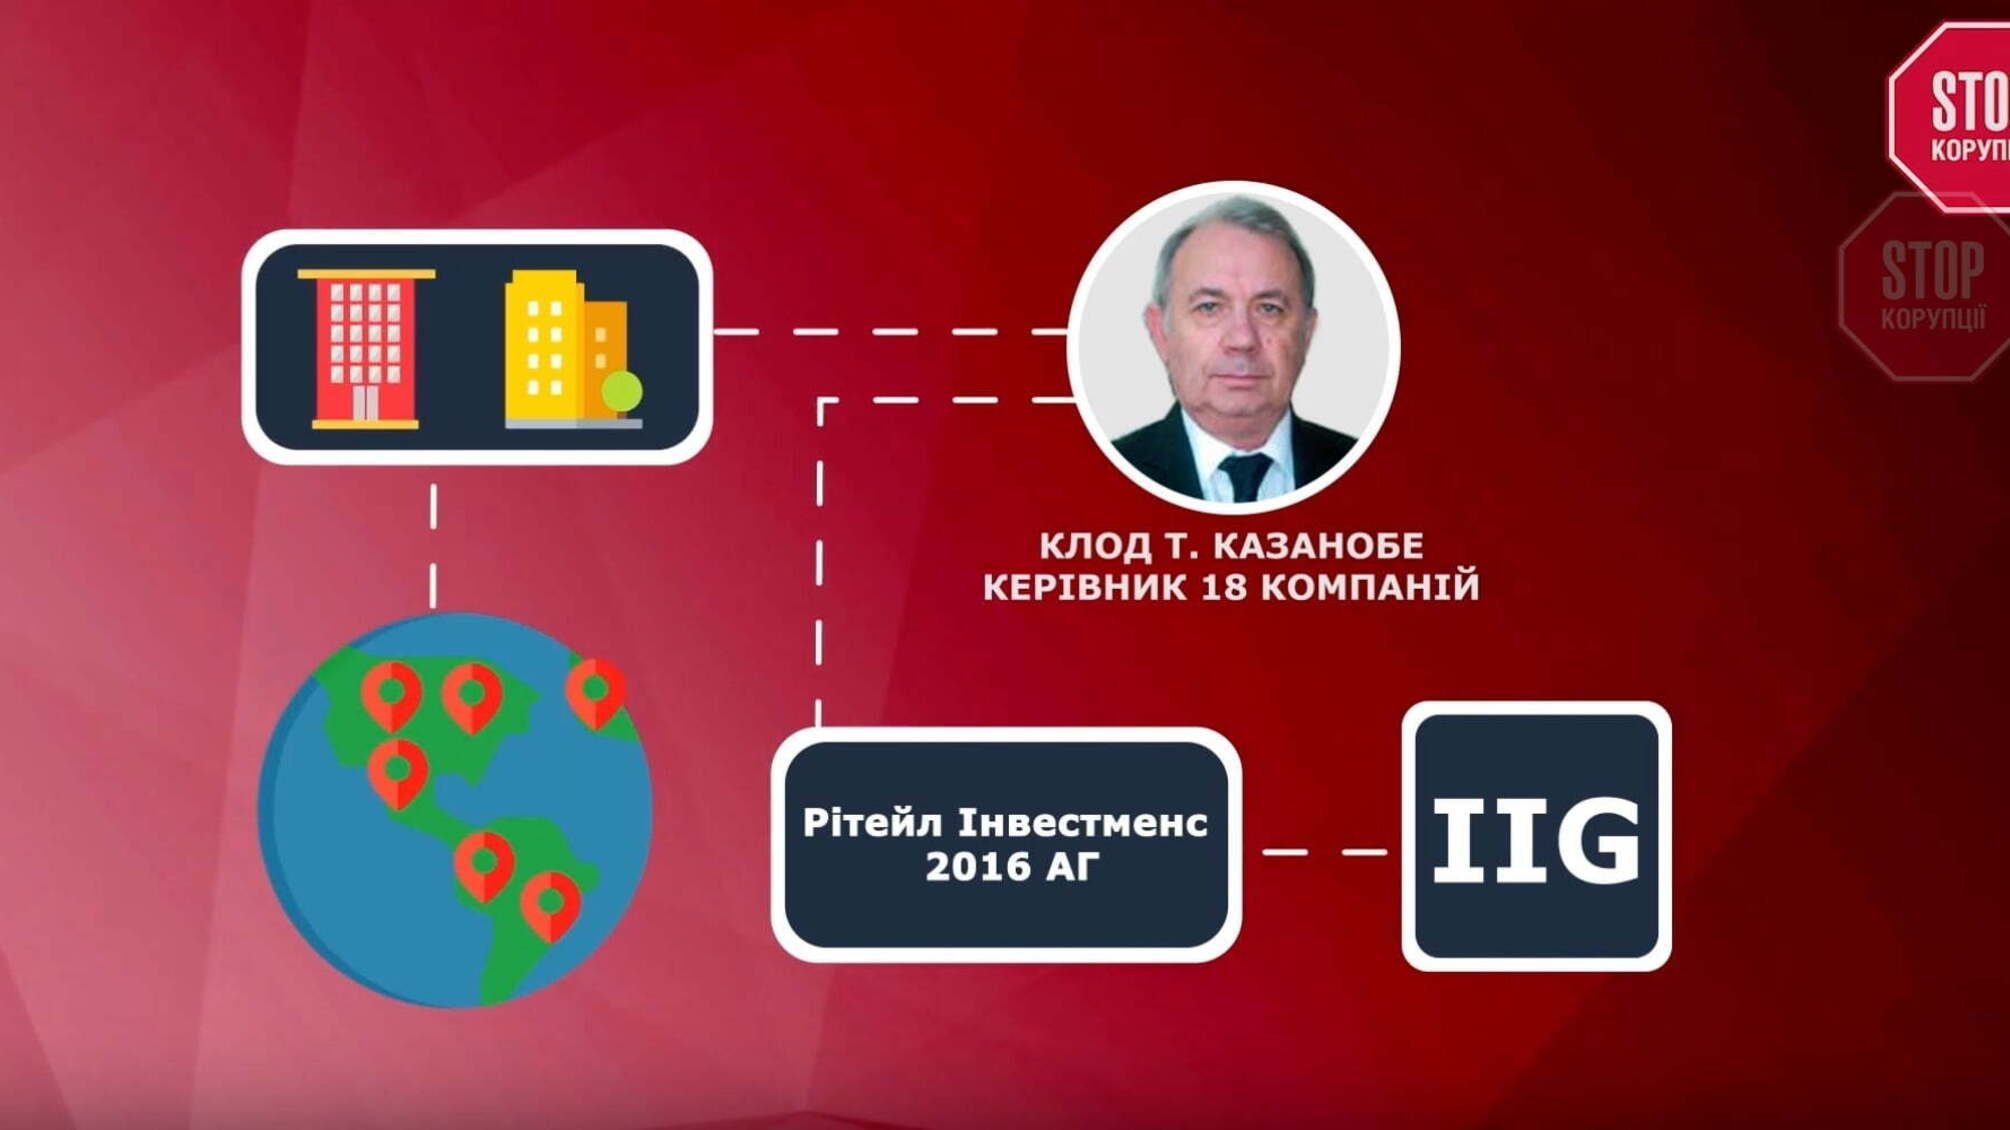 Компанія, яка виготовлятиме українські паспорти, приховує реальних власників